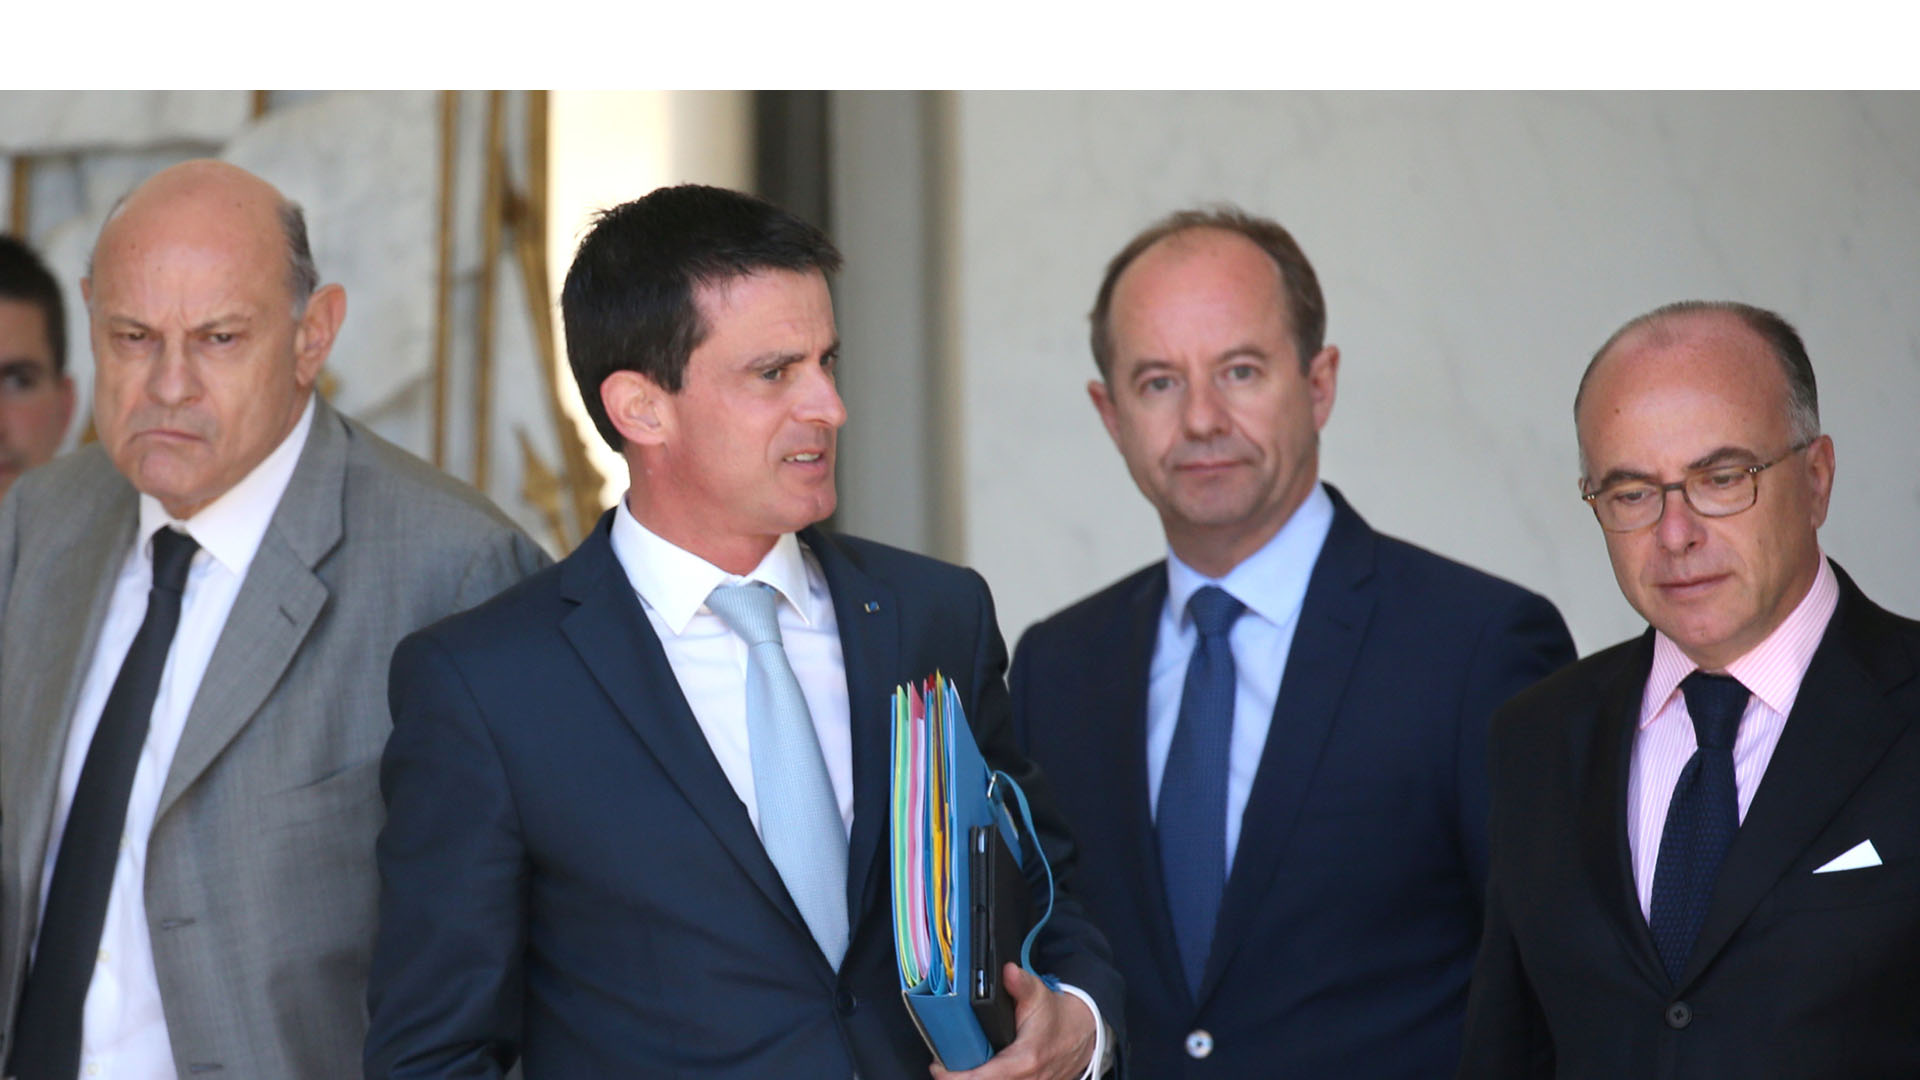 El primer ministro, Manuel Valls, presentó un proyecto de ley para ampliar los poderes especiales de la Policía